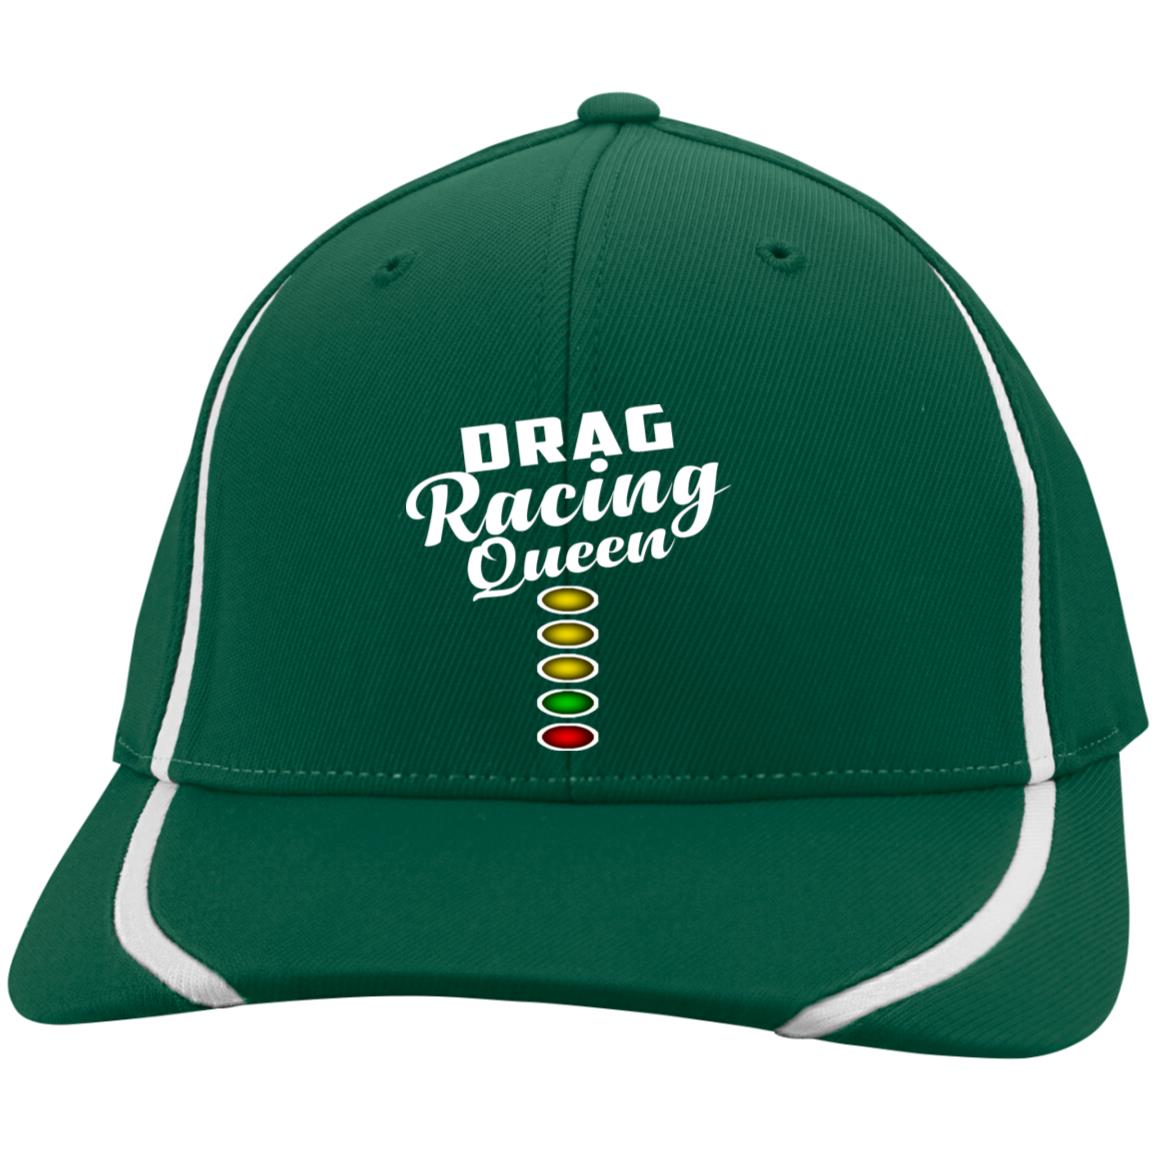 Drag racing cap